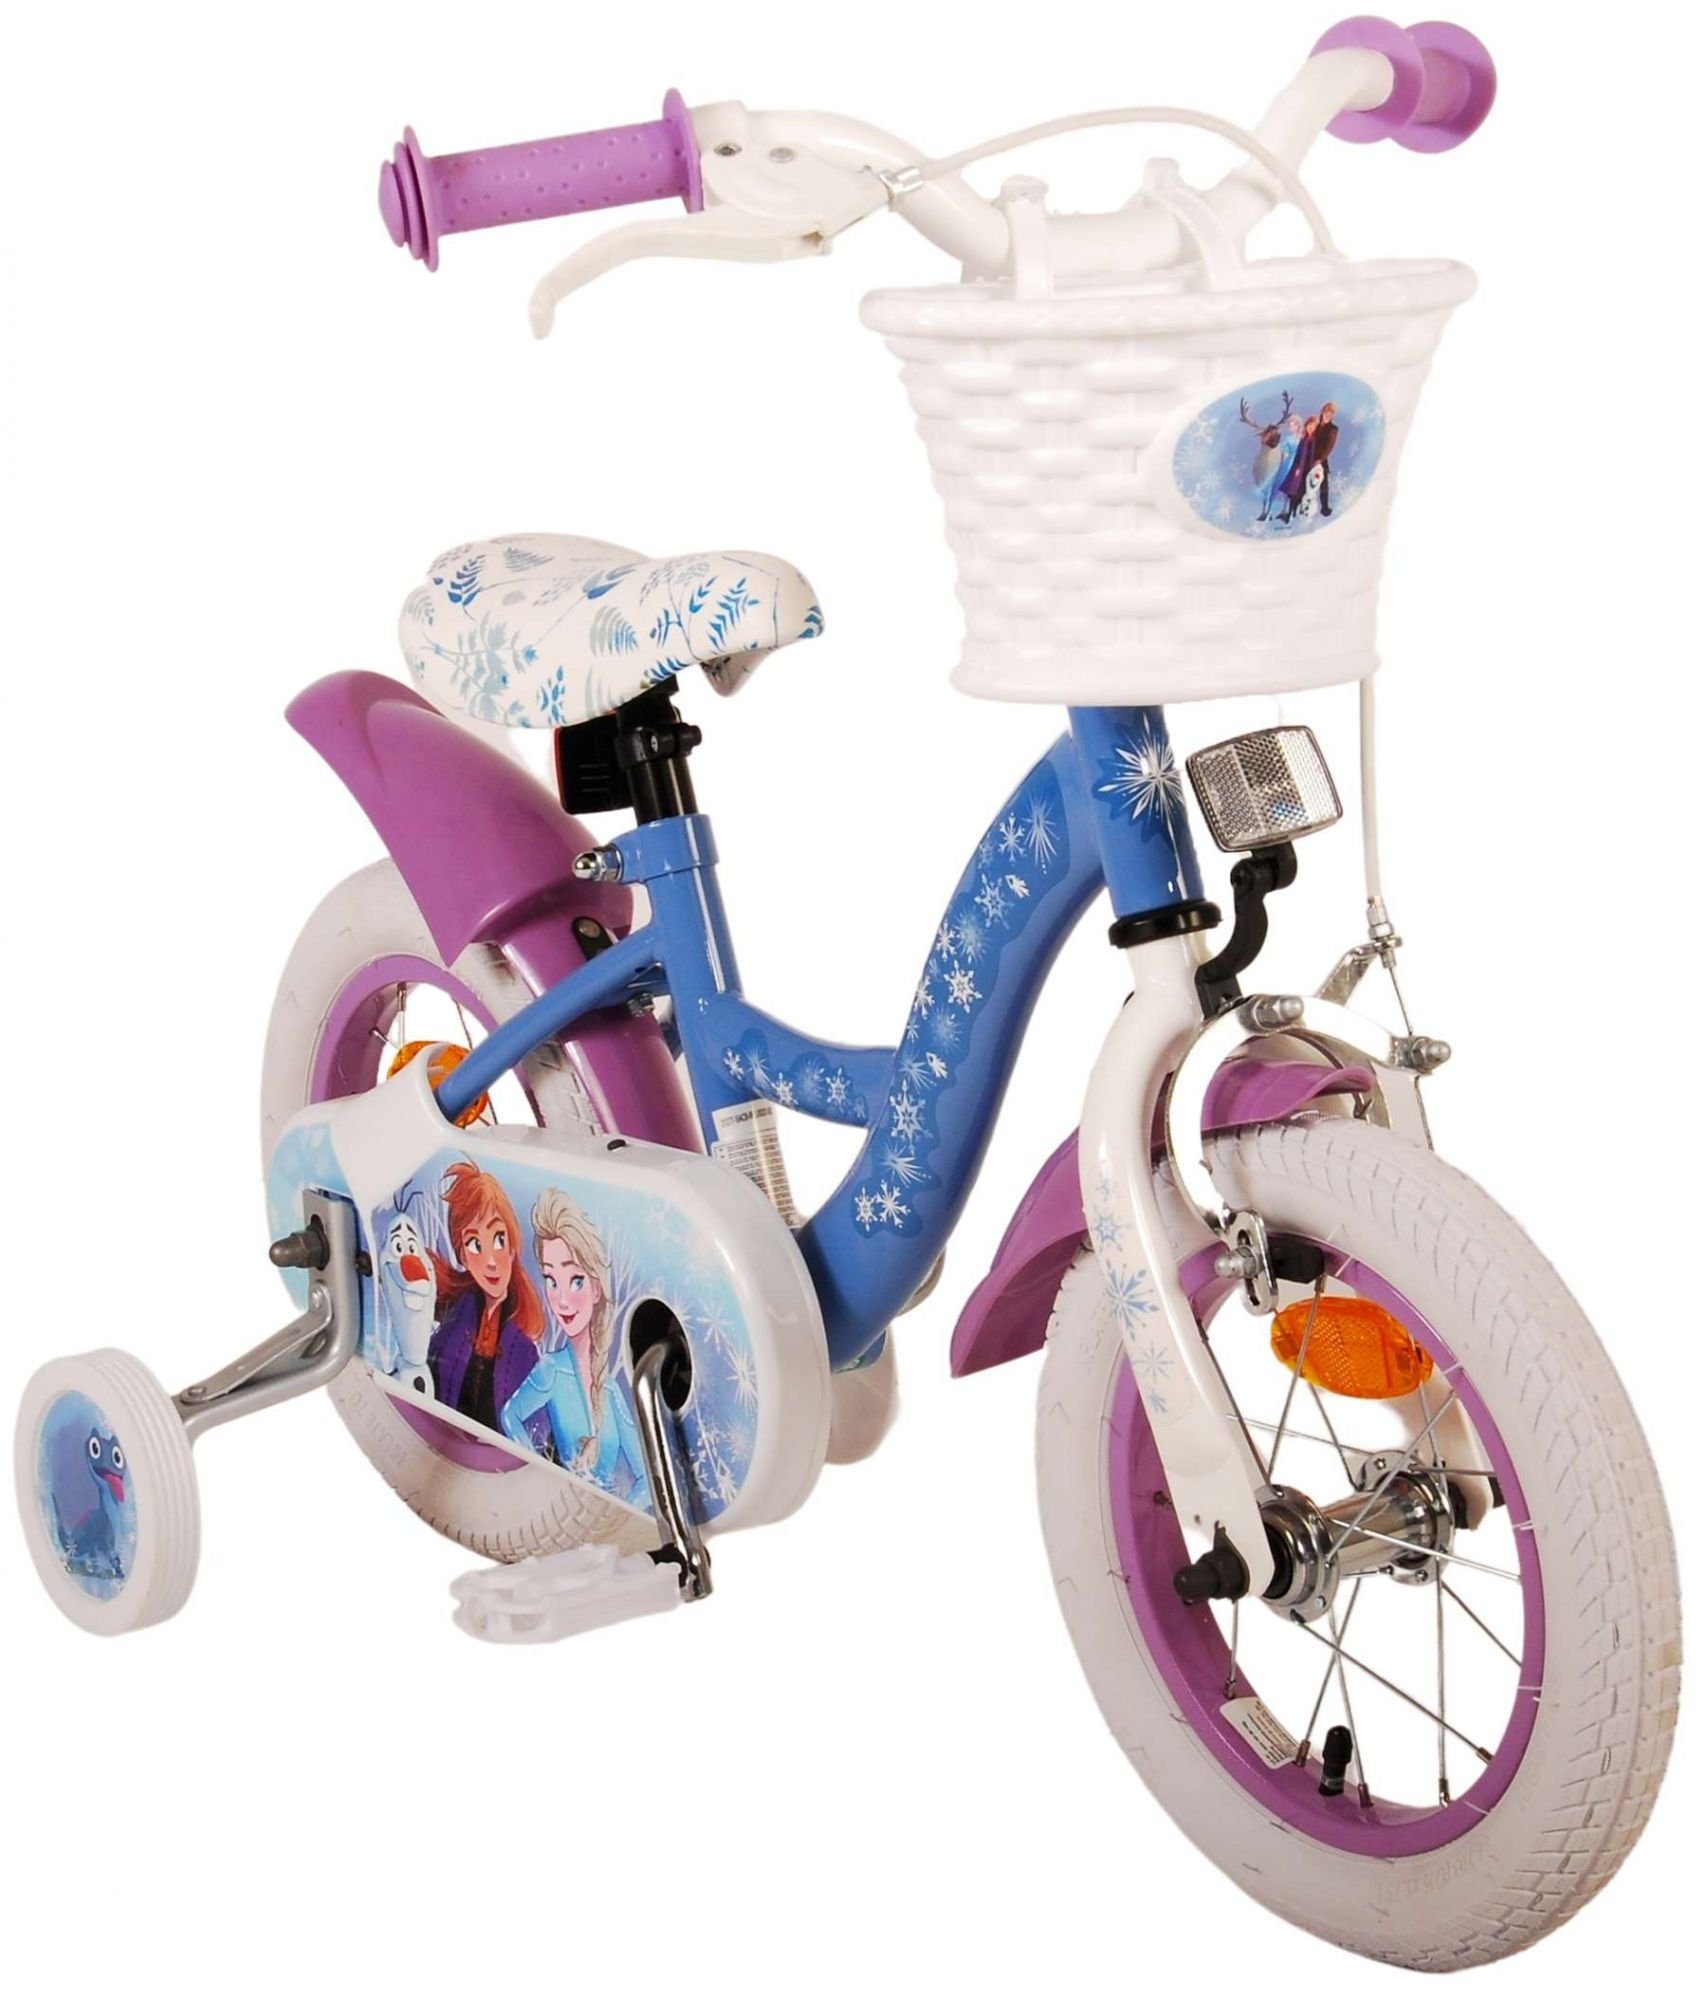 TPFSports Kinderfahrrad Disney Frozen 2 12 Kinder Fahrrad Gang, Mädchen 1 Kinderrad - 12 mit Zoll Sicherheitsgriffe), (Mädchen Zoll, Rutschfeste Stützräder Laufrad Fahrrad